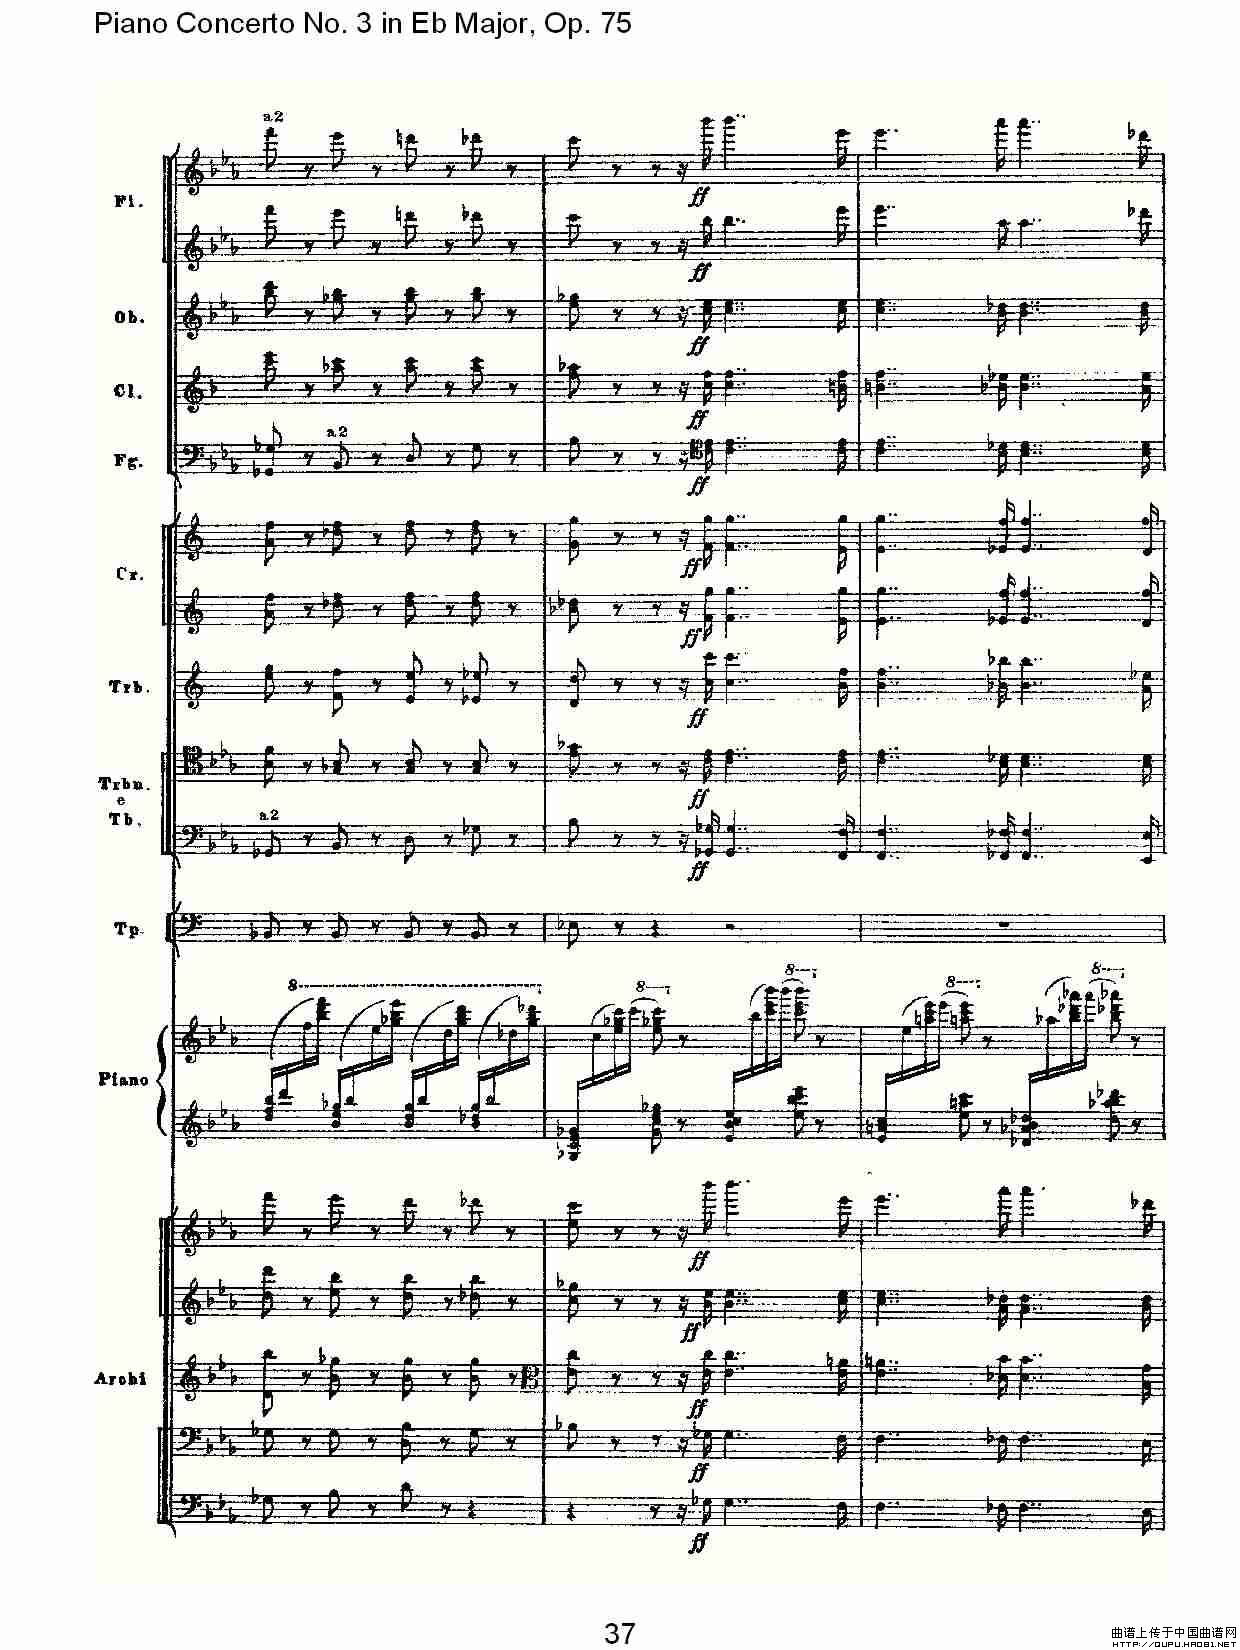 Piano Concerto No.3 in Eb Major, Op.75（Eb大调第三钢琴协奏）(1)_原文件名：Piano Concerto No.3 in Eb Major, Op.757.jpg